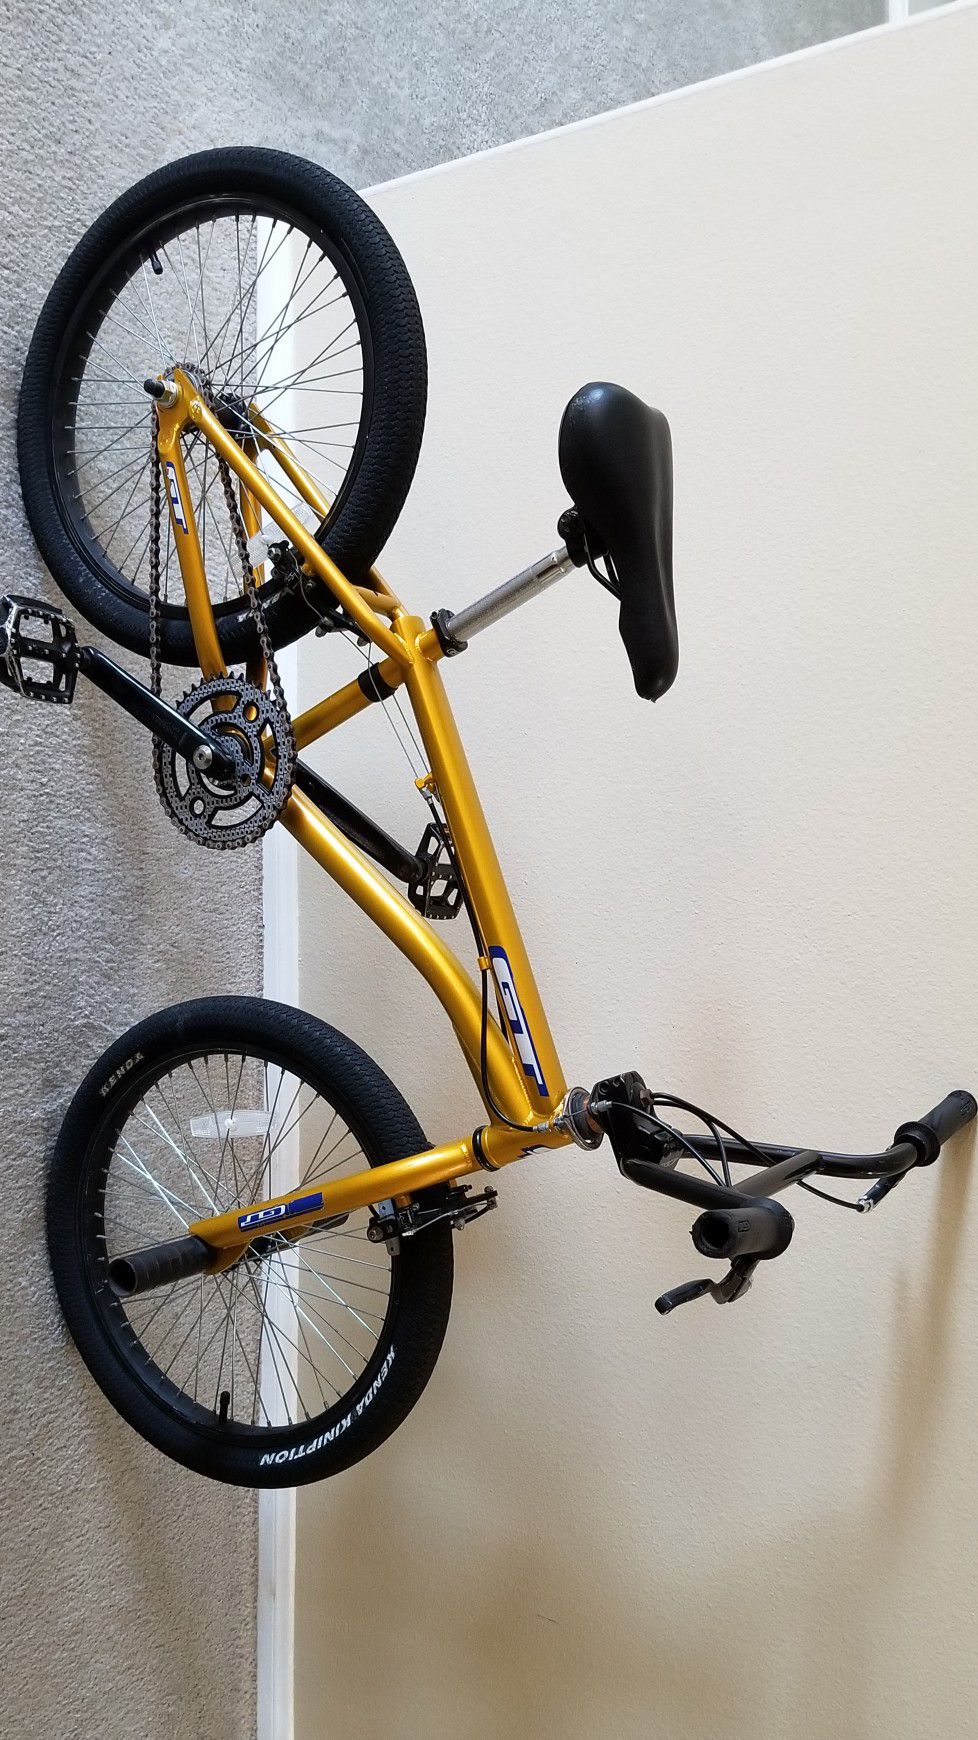 Gold Gt Zone Bmx Bike For Sale In Perris Ca Offerup